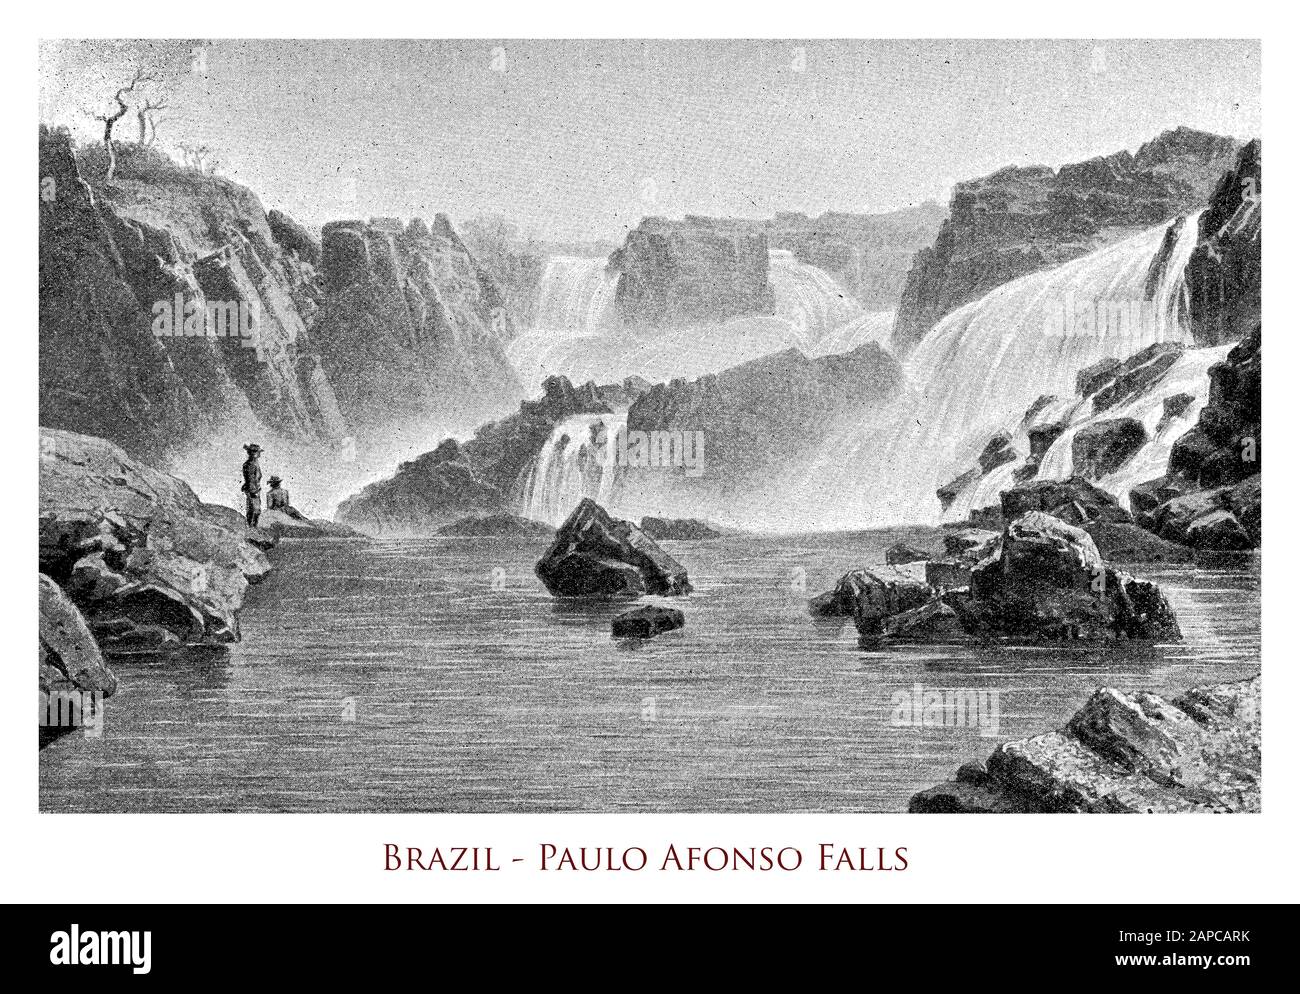 Brasilien - Paulo Afonso Falls, eine Reihe von Wasserfällen und drei Katarakte auf dem Sao Francisco River im Nordosten Brasiliens nahe der Stadt Paulo Afonso bis zu 84 m hoch Stockfoto